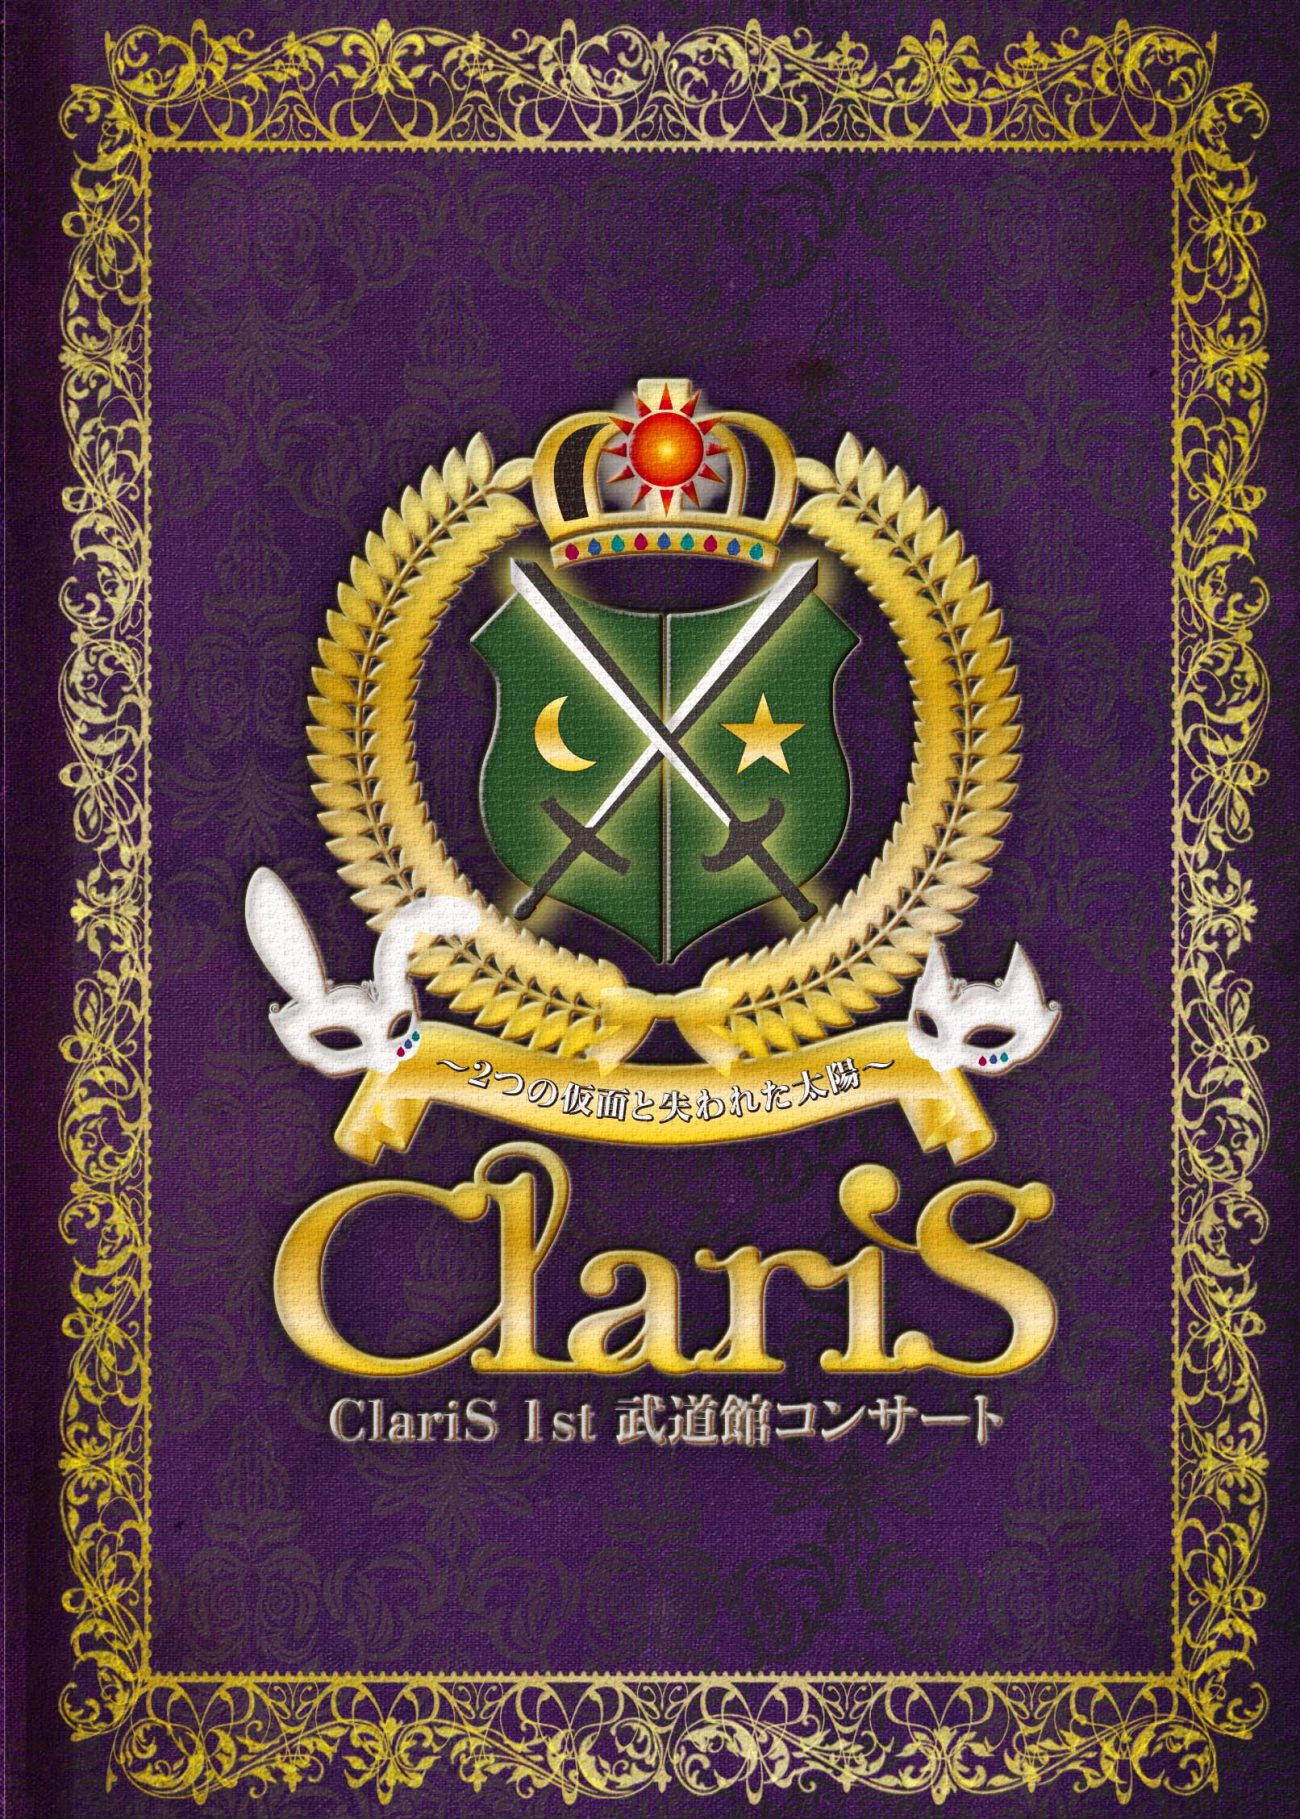 ClariSパンフレット